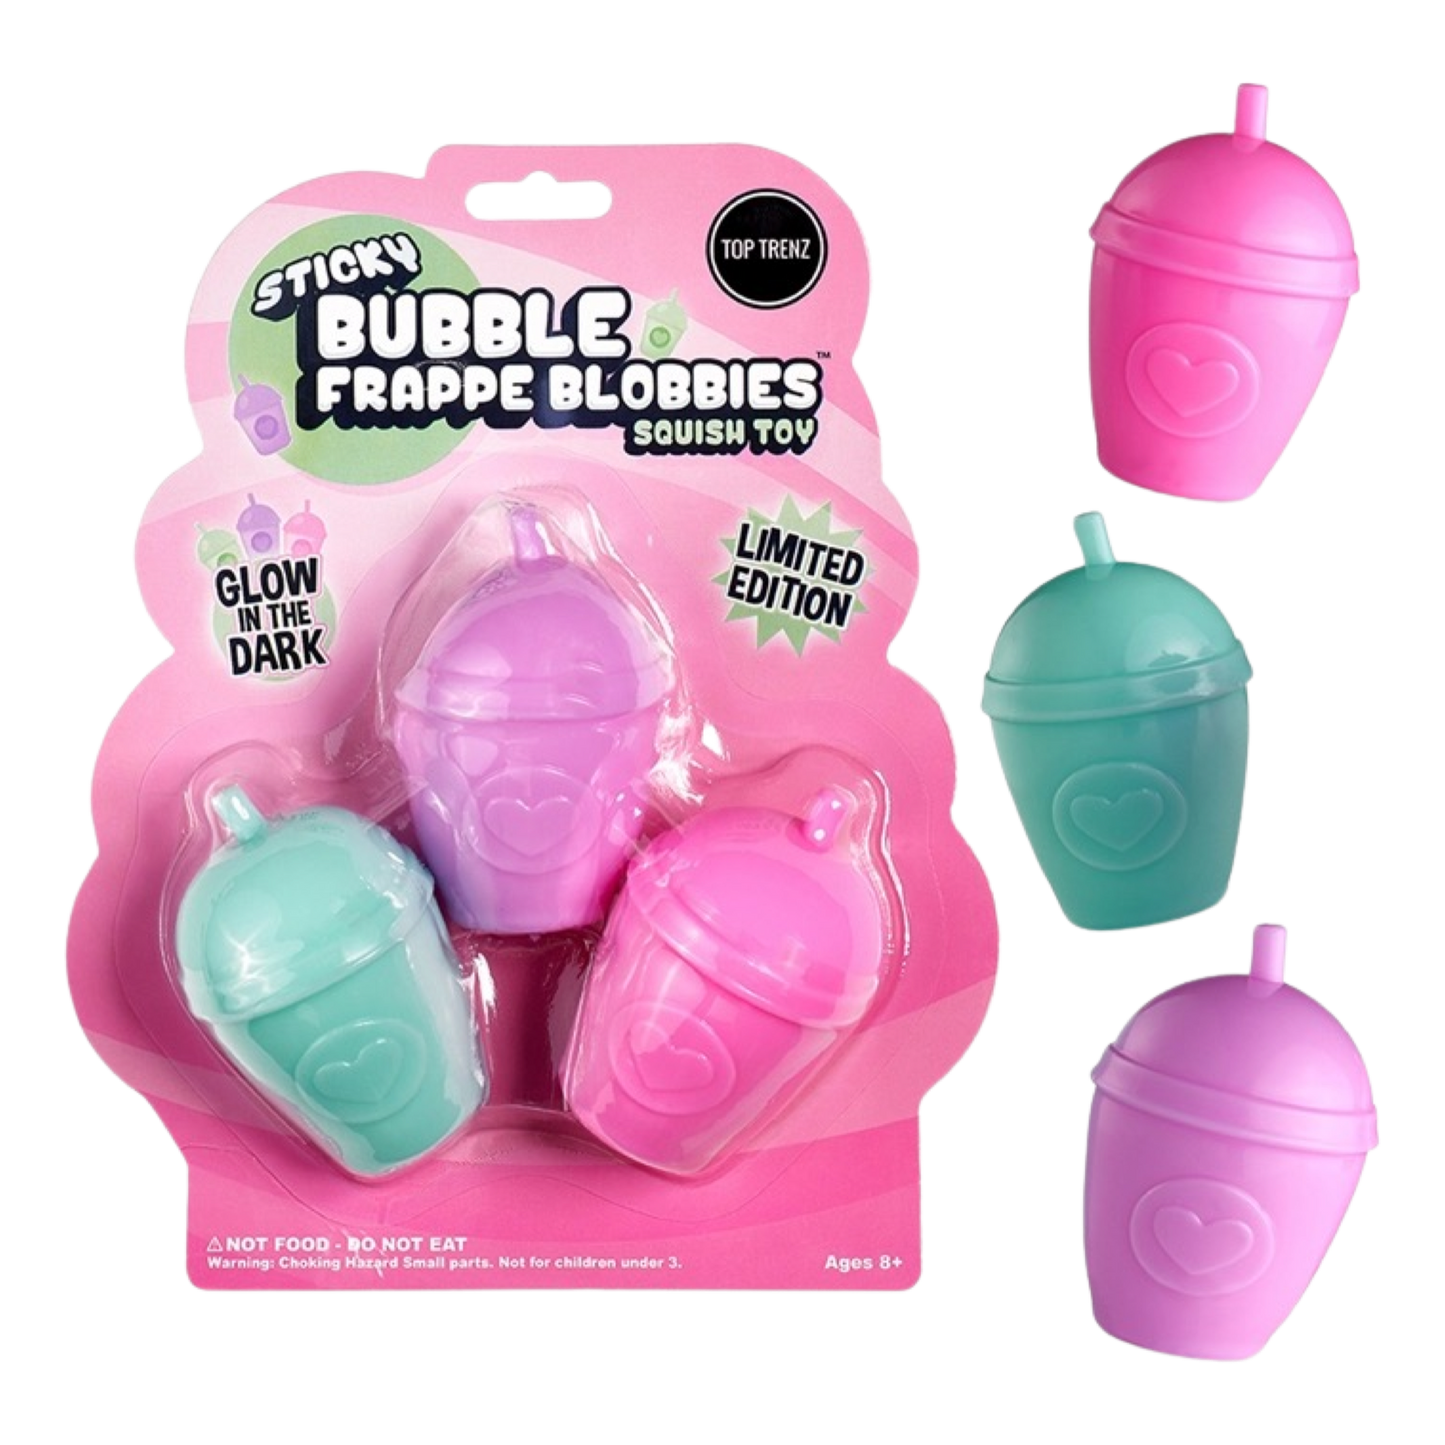 Sticky Bubble Frap Blobbies